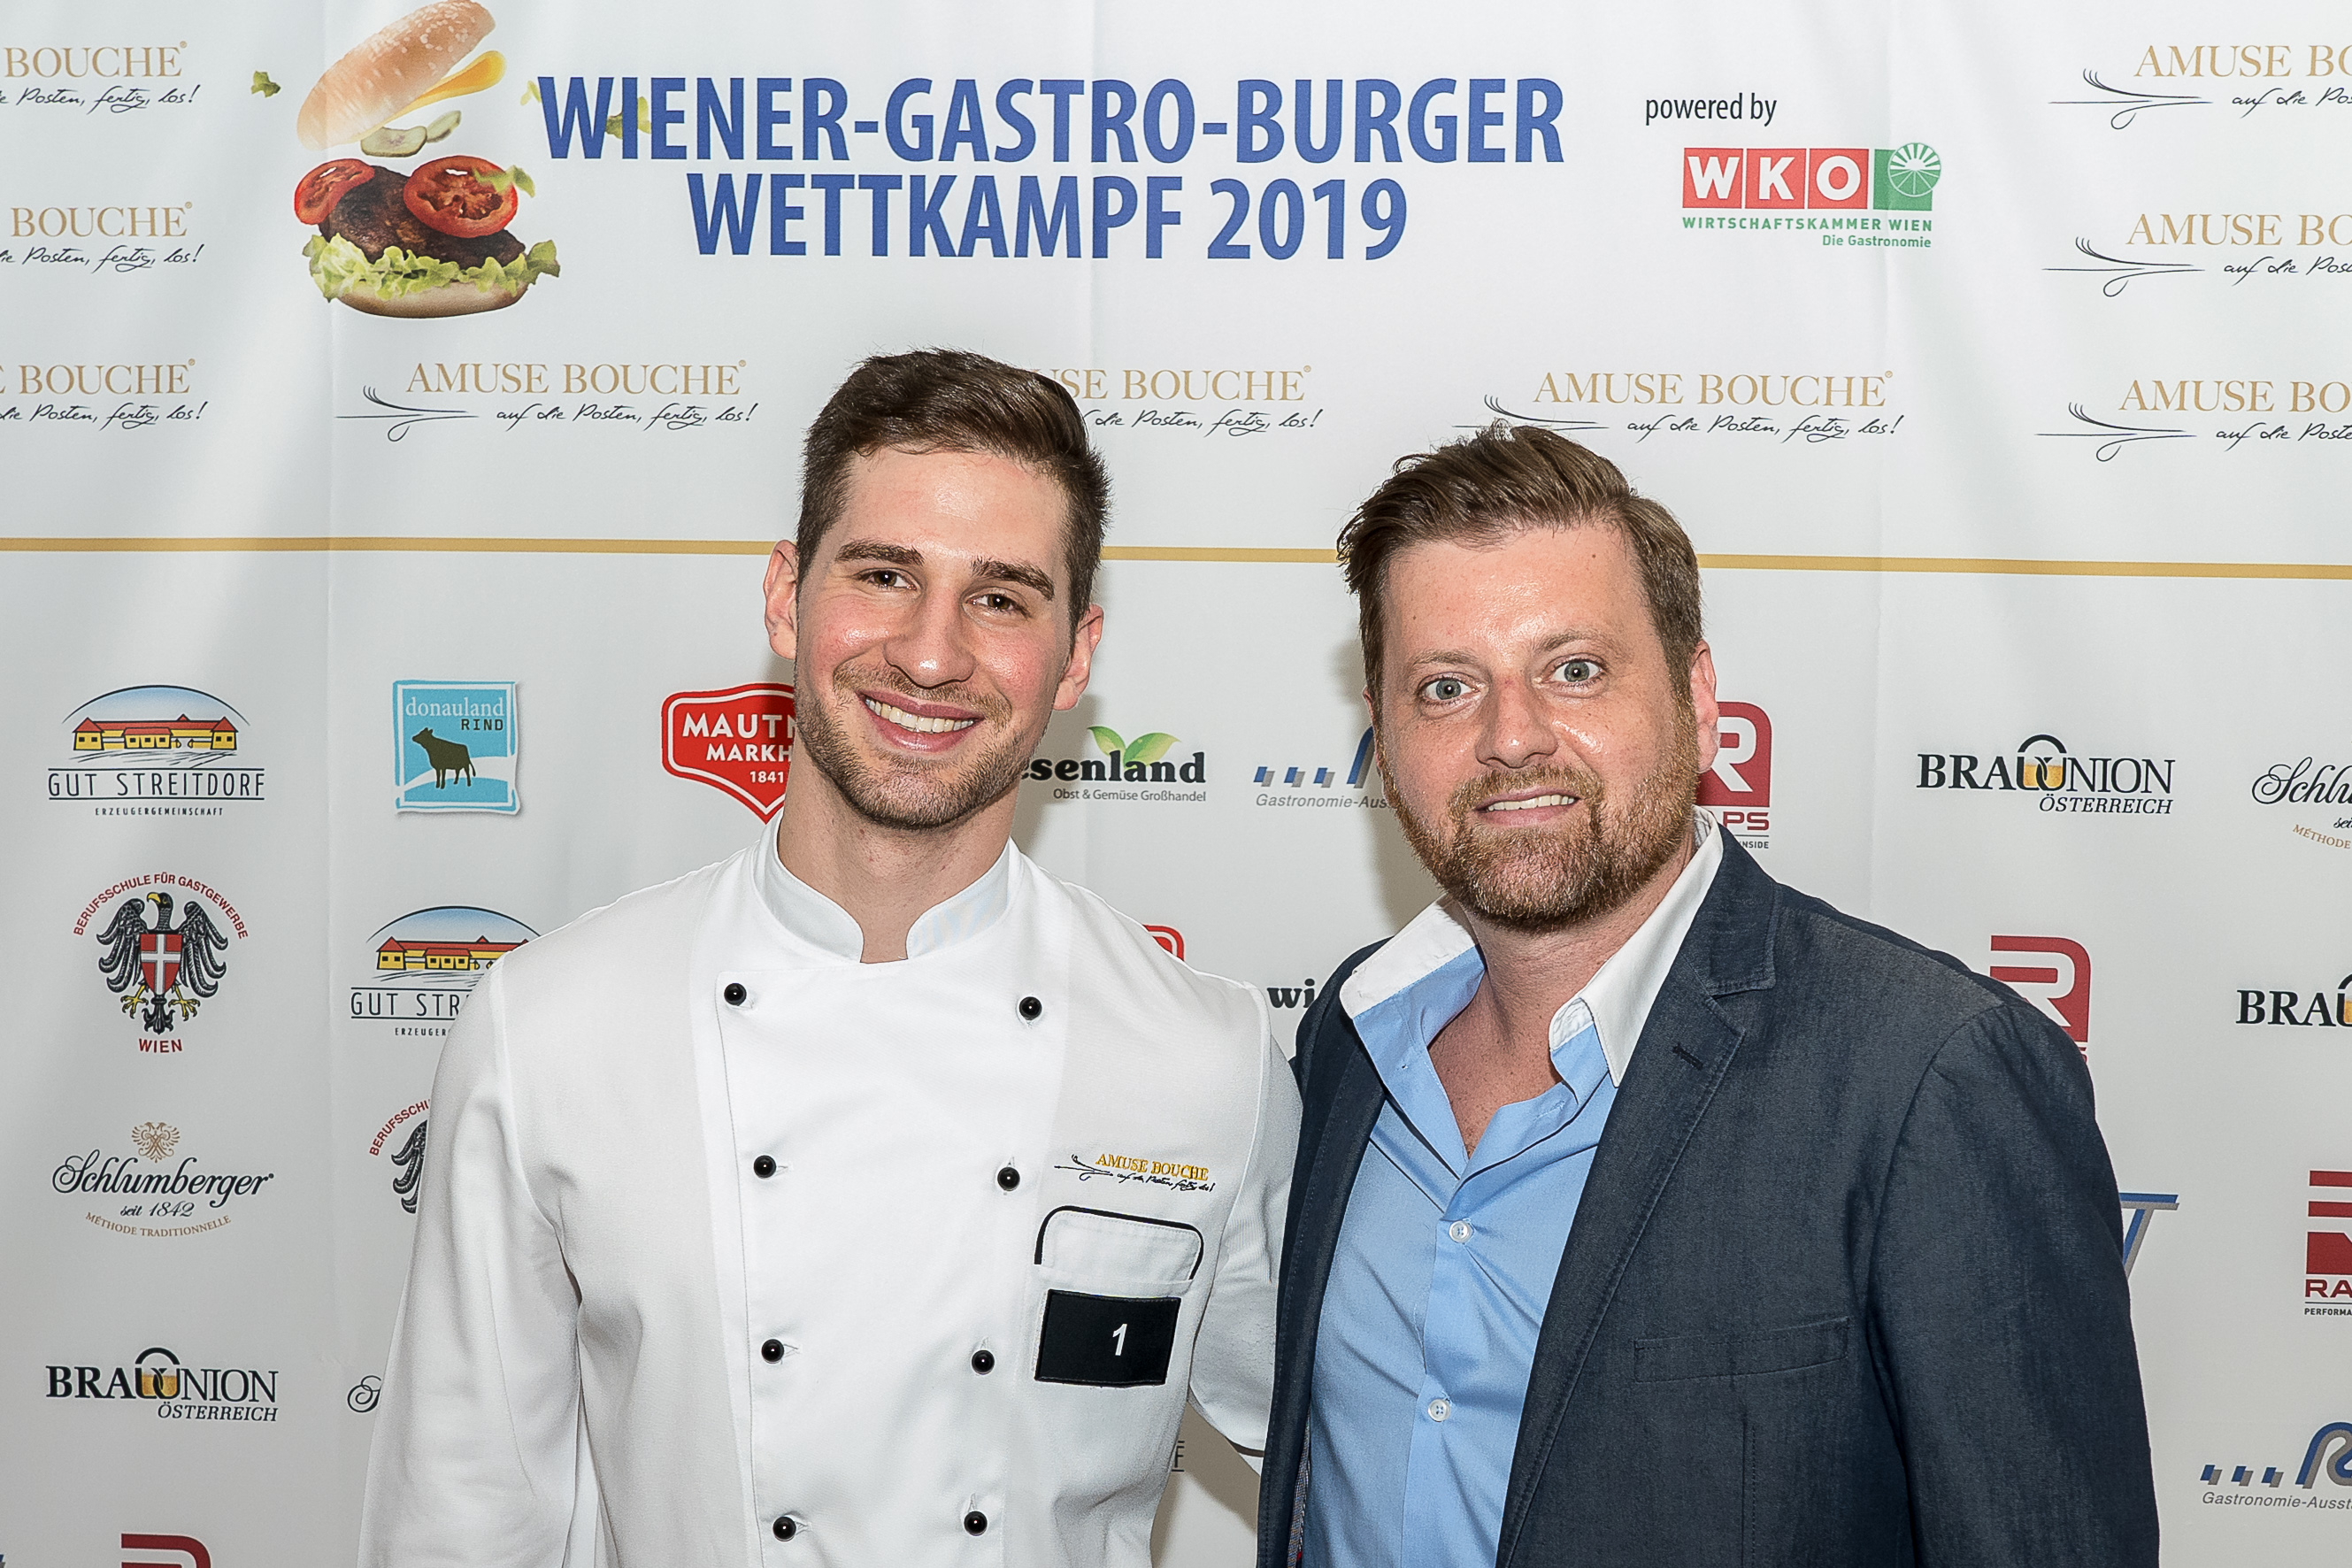 Wiener-Gastro-Burger 2019